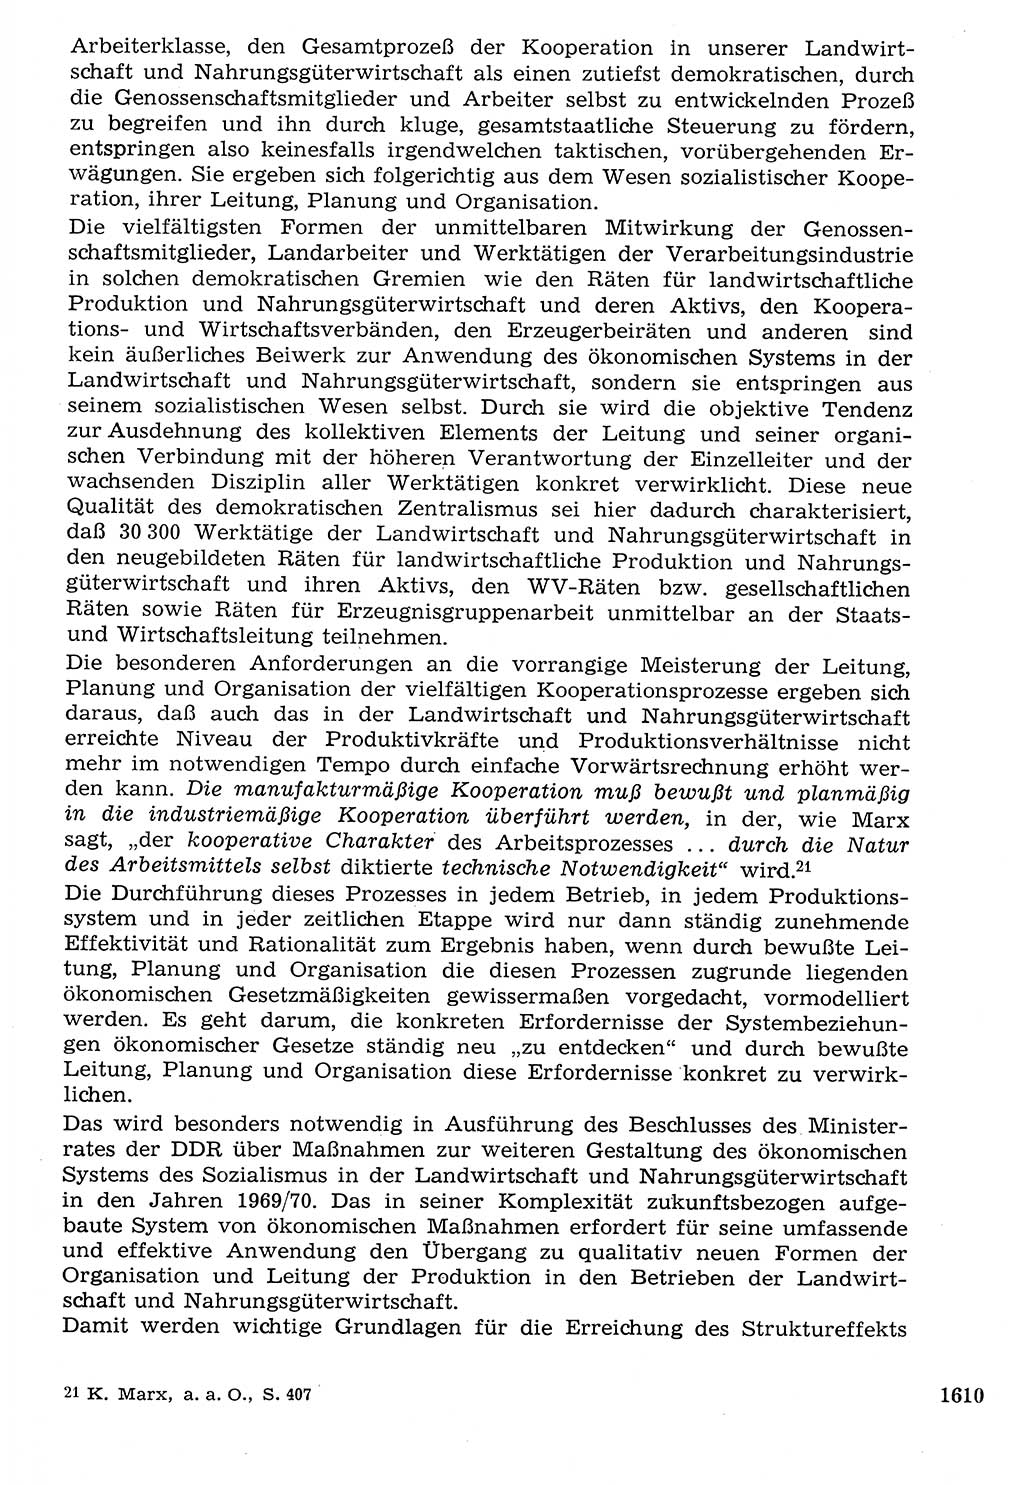 Staat und Recht (StuR), 17. Jahrgang [Deutsche Demokratische Republik (DDR)] 1968, Seite 1610 (StuR DDR 1968, S. 1610)